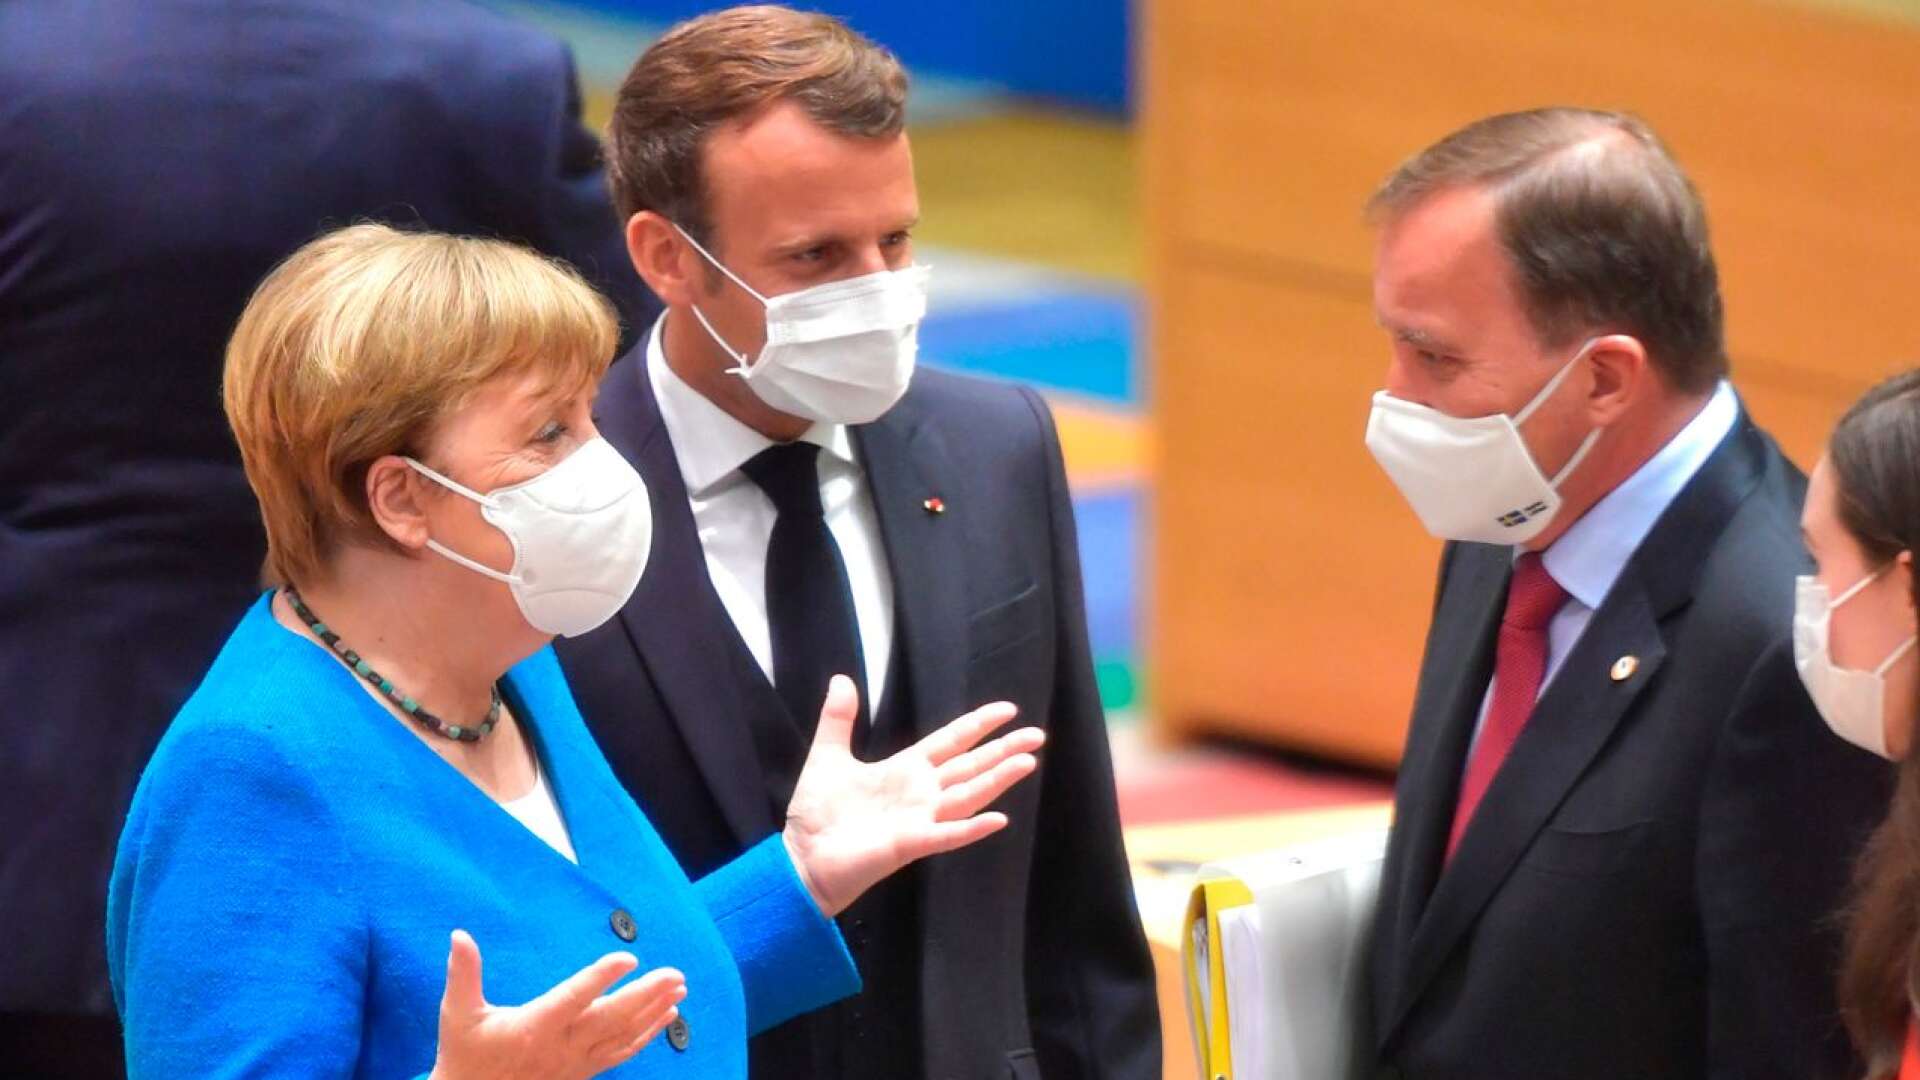 När Merkel och Macron körde på hade Löfven inget att sätta emot.